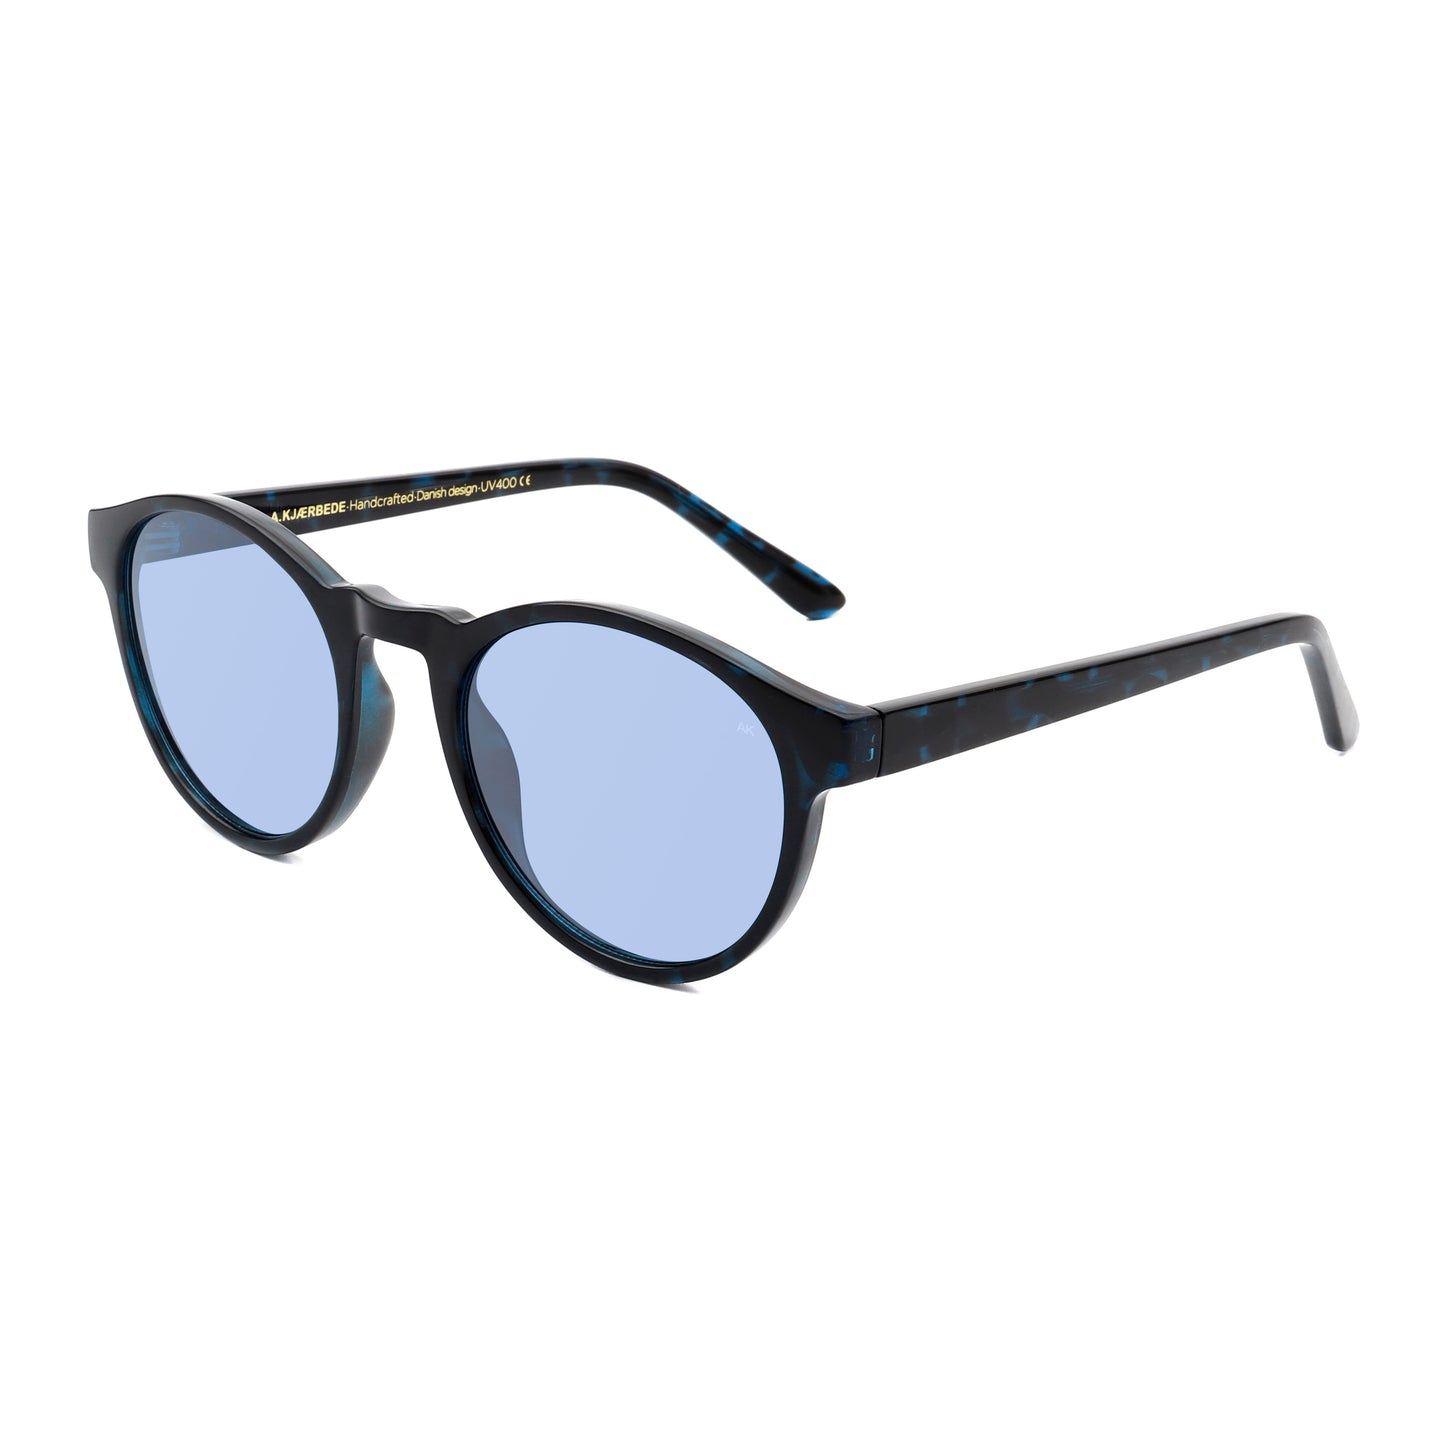 A.Kjaerbede Marvin Sunglasses in Demi Blue color